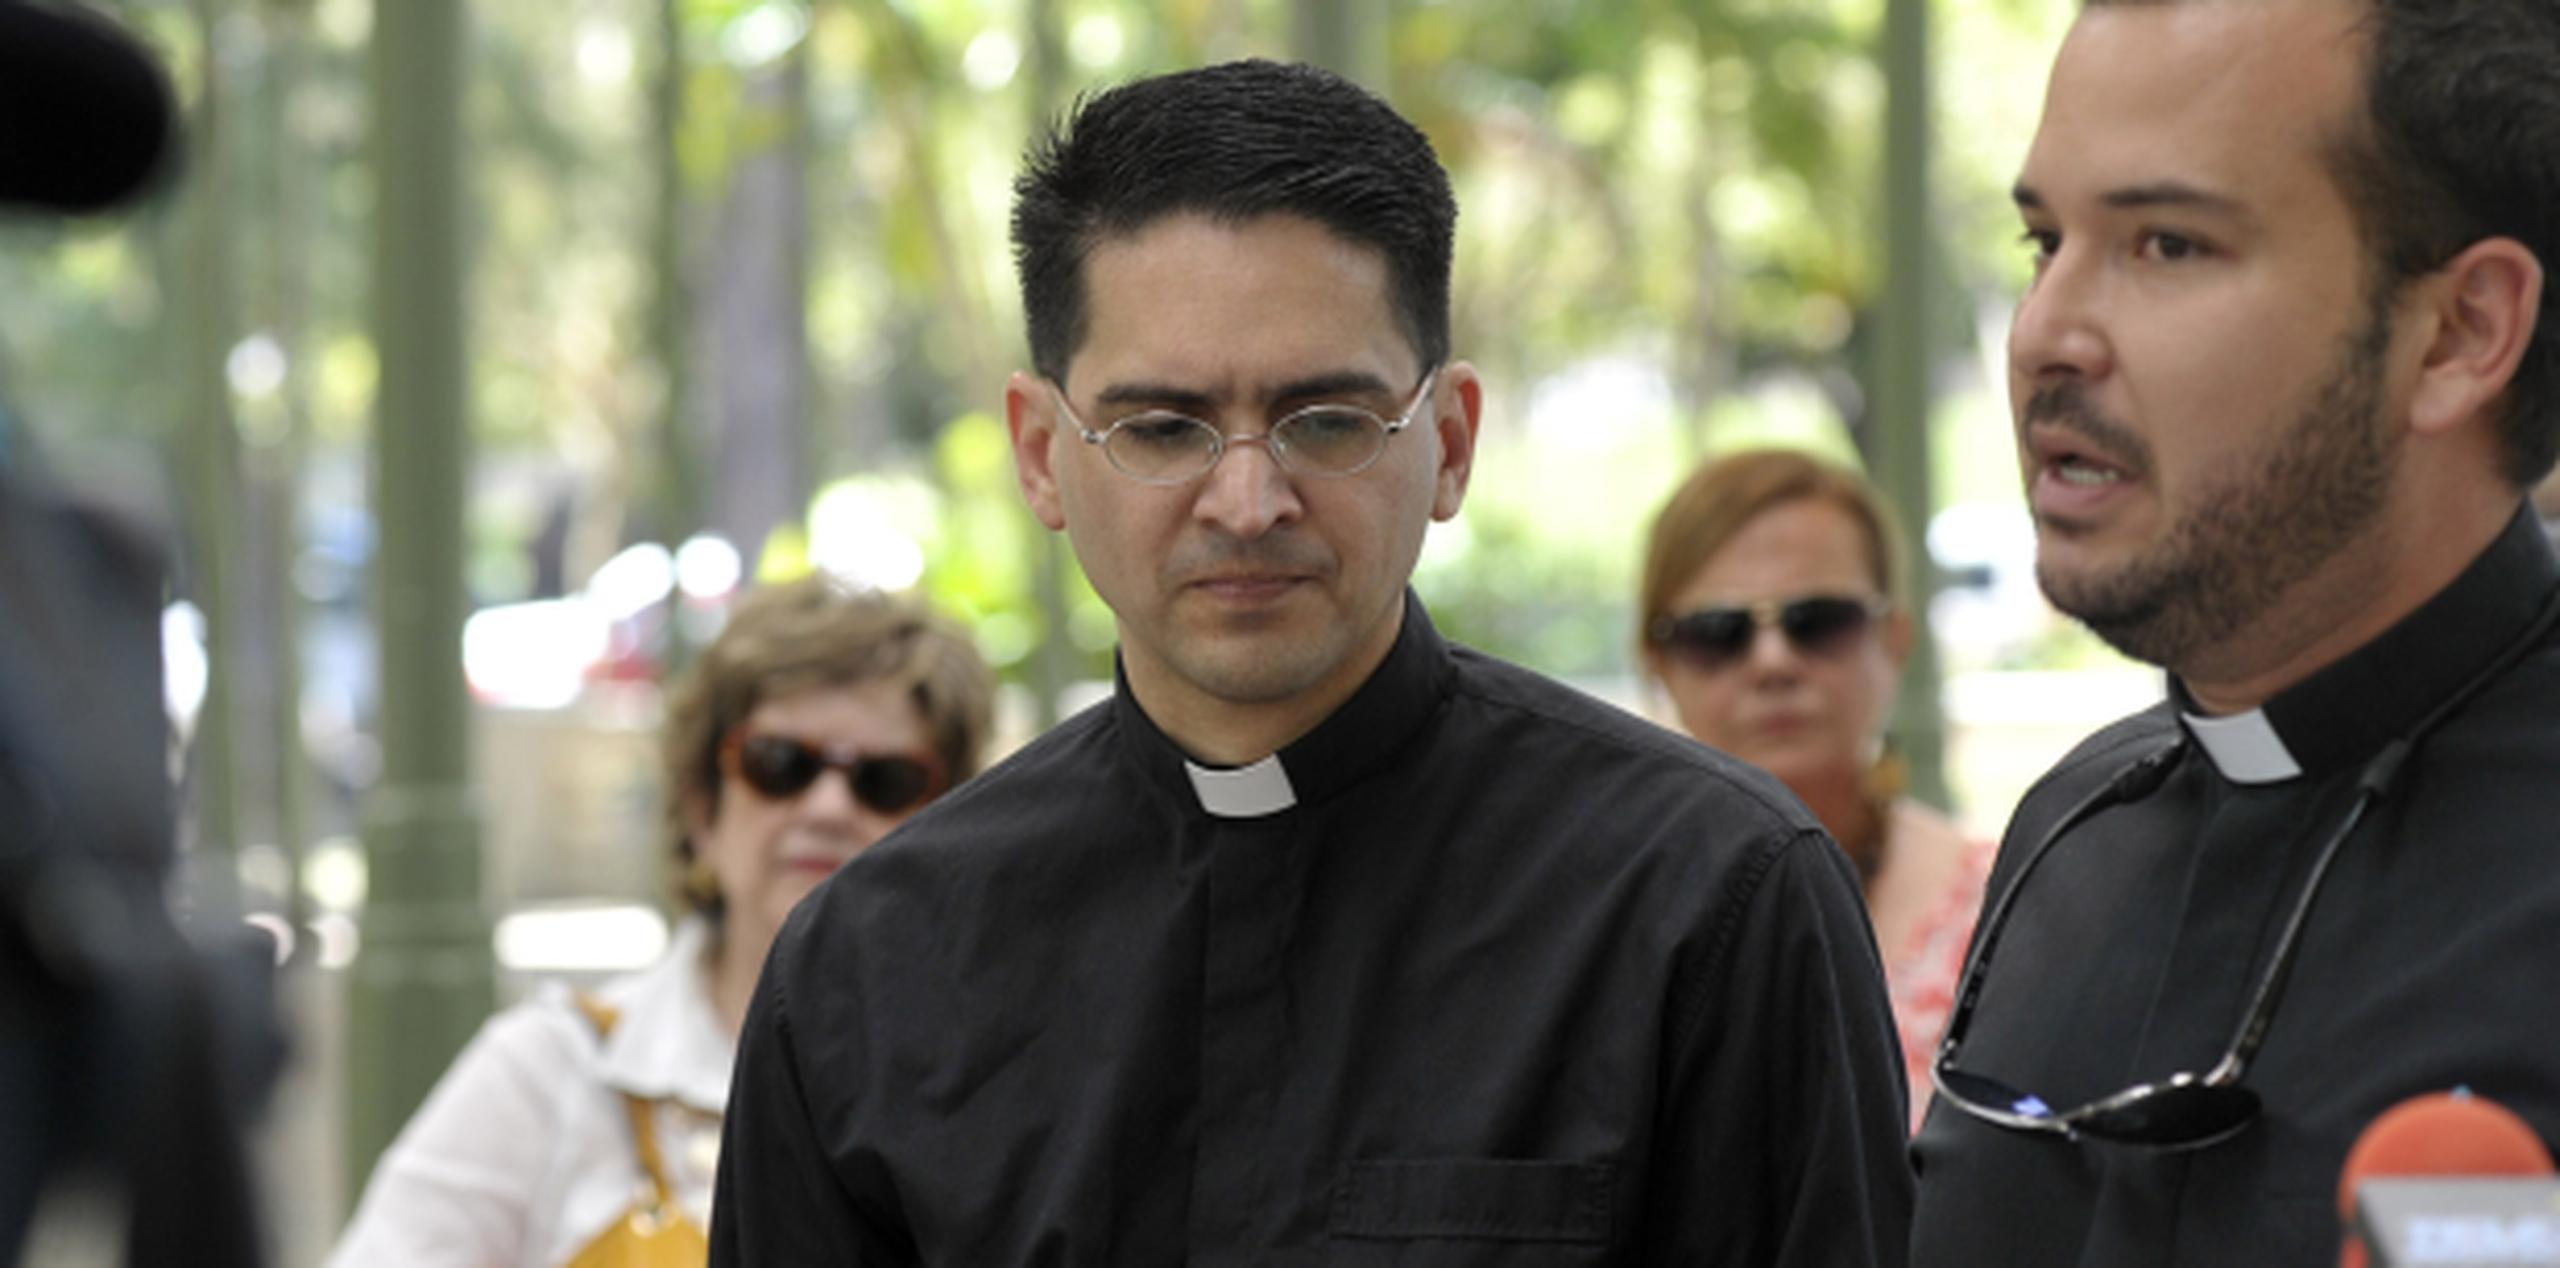 La determinación permitirá a José Colón Otero (centro), adscrito a la Diócesis de Arecibo, ejercer de forma parcial y condicionada el ministerio sacerdotal. (Archivo)